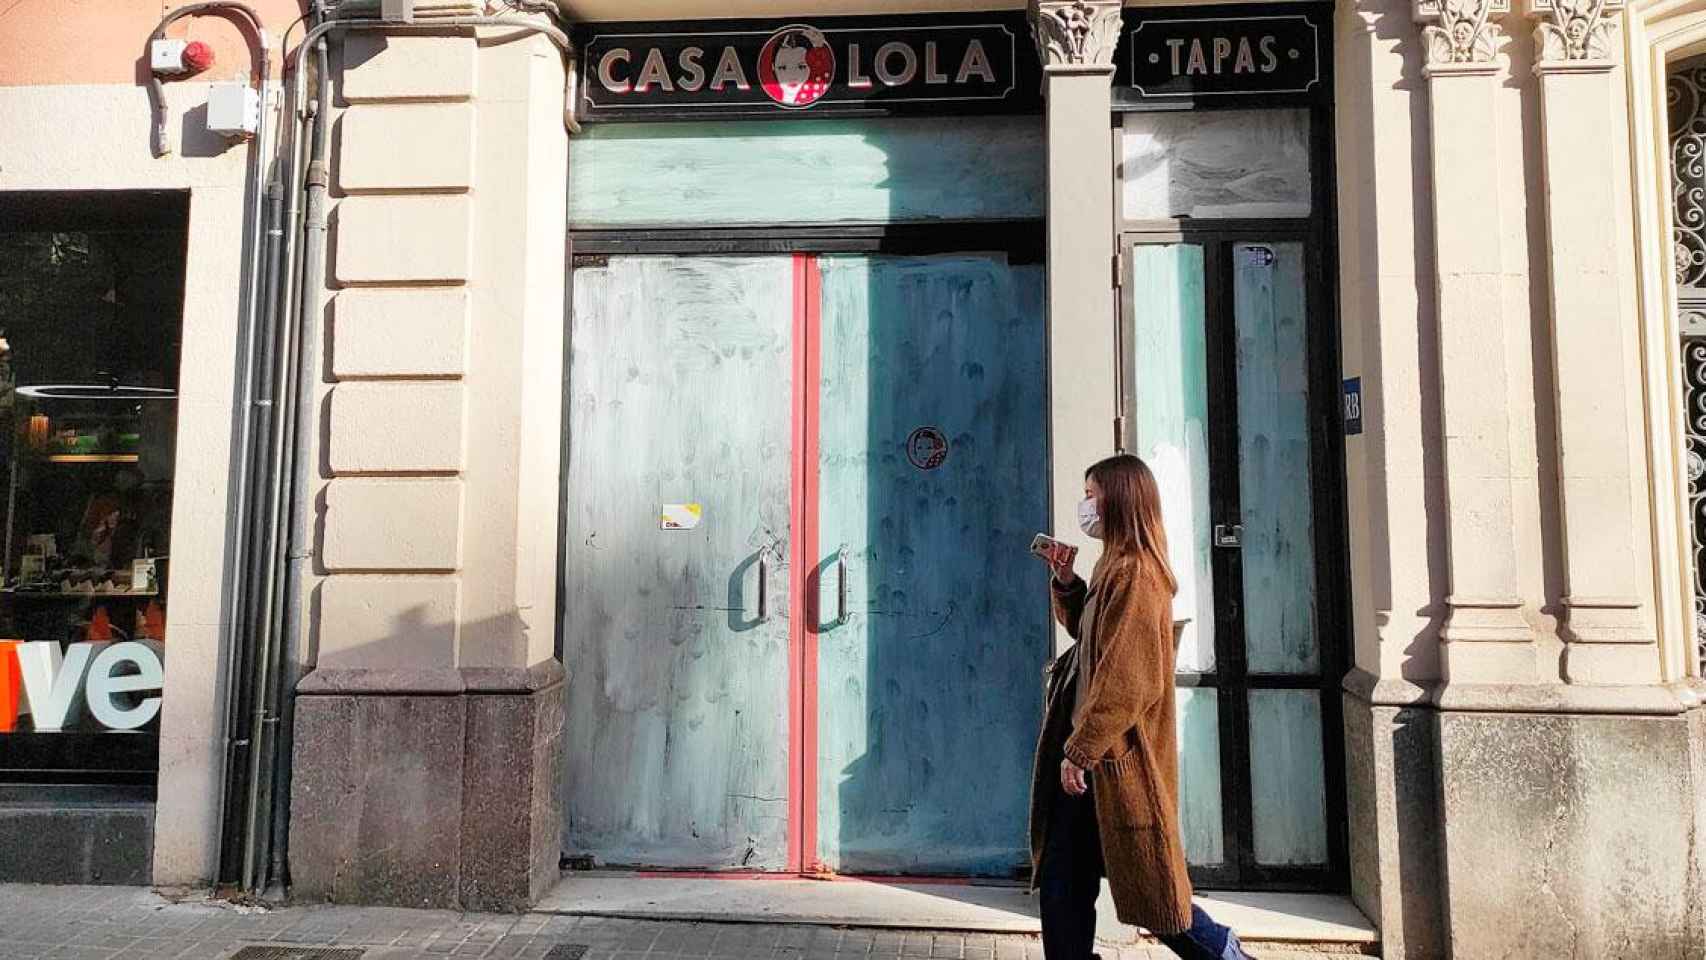 Casa Lola de rambla Catalunya, uno de los locales comprados por grupo La Pomada / CG